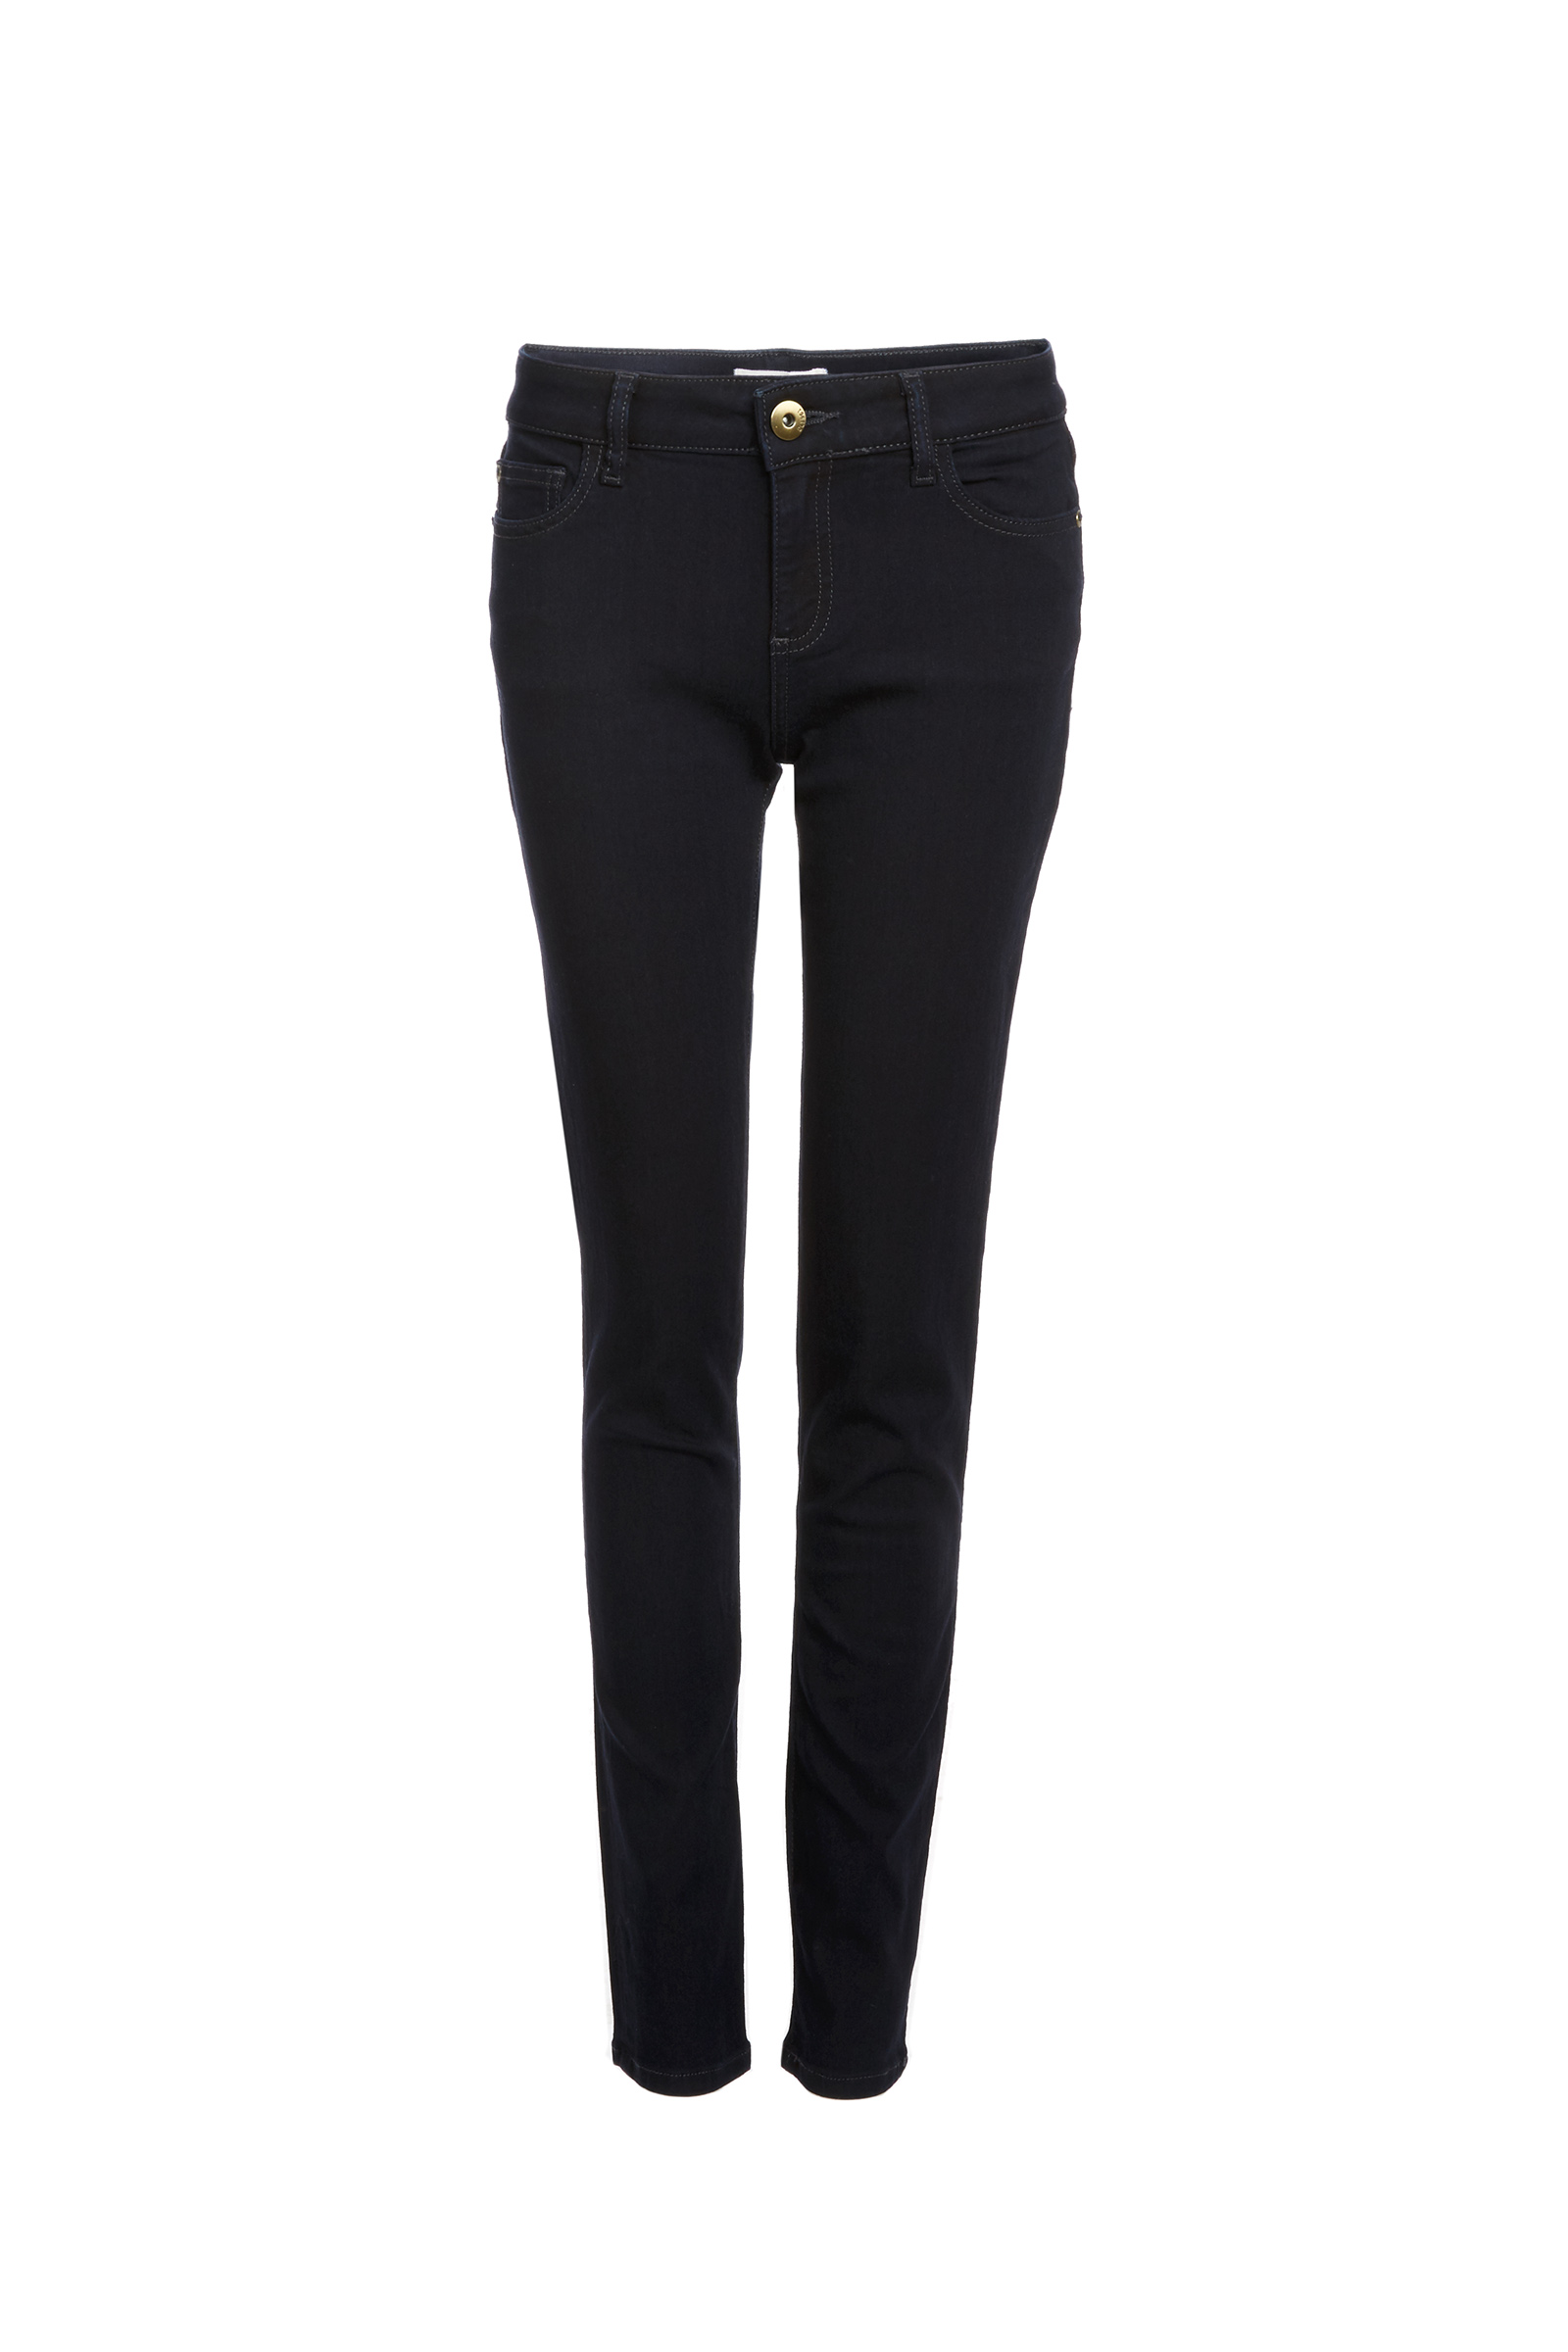 dl1961 black jeans